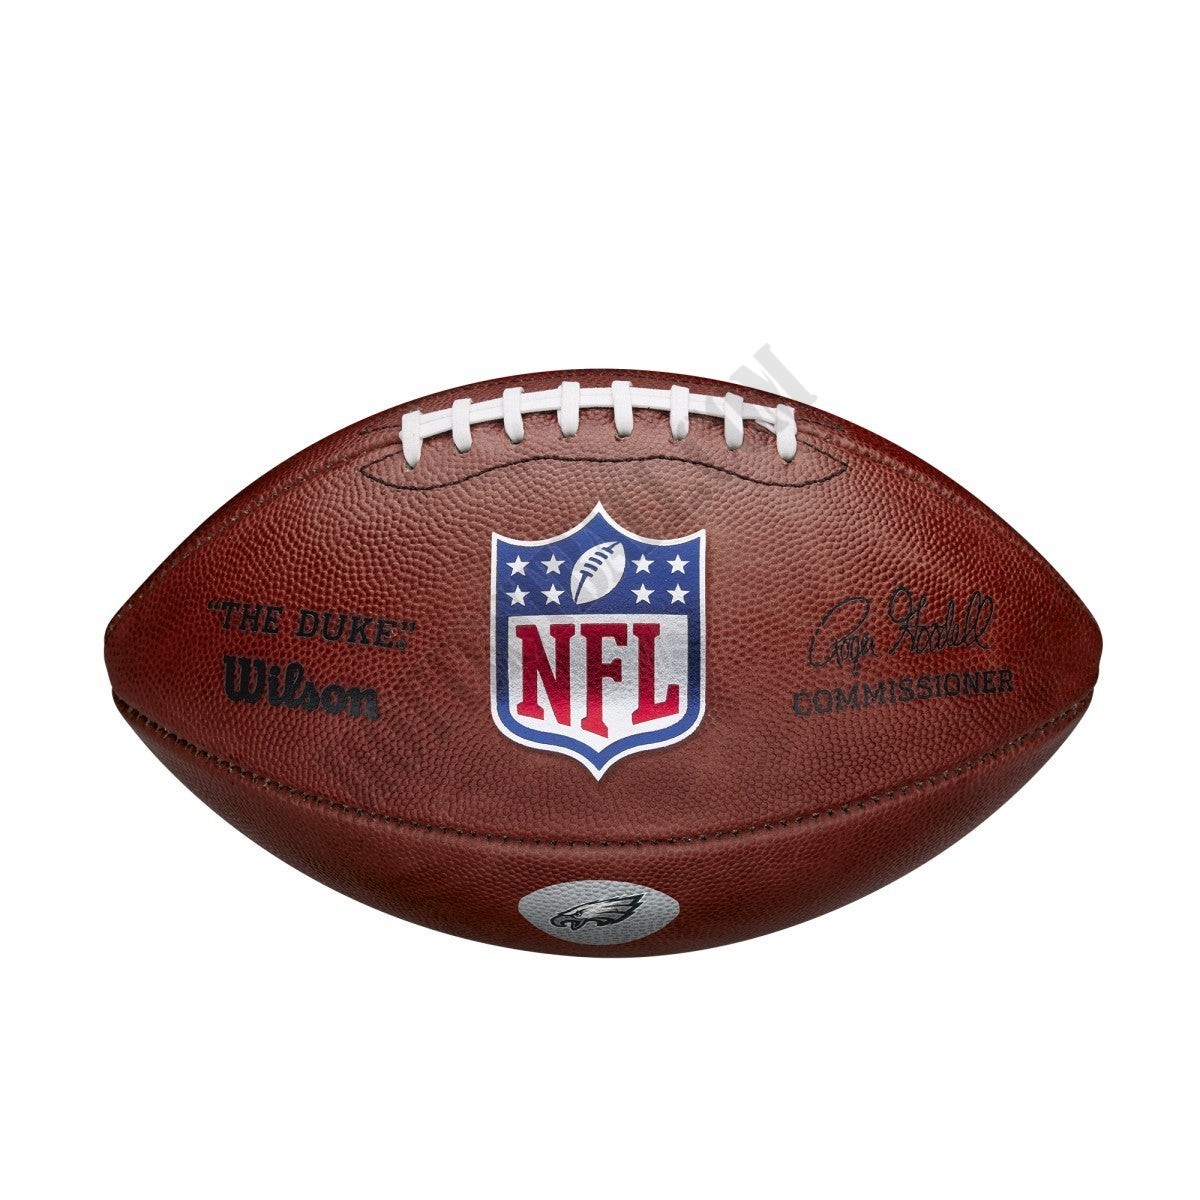 The Duke Decal NFL Football - Philadelphia Eagles ● Wilson Promotions - -1